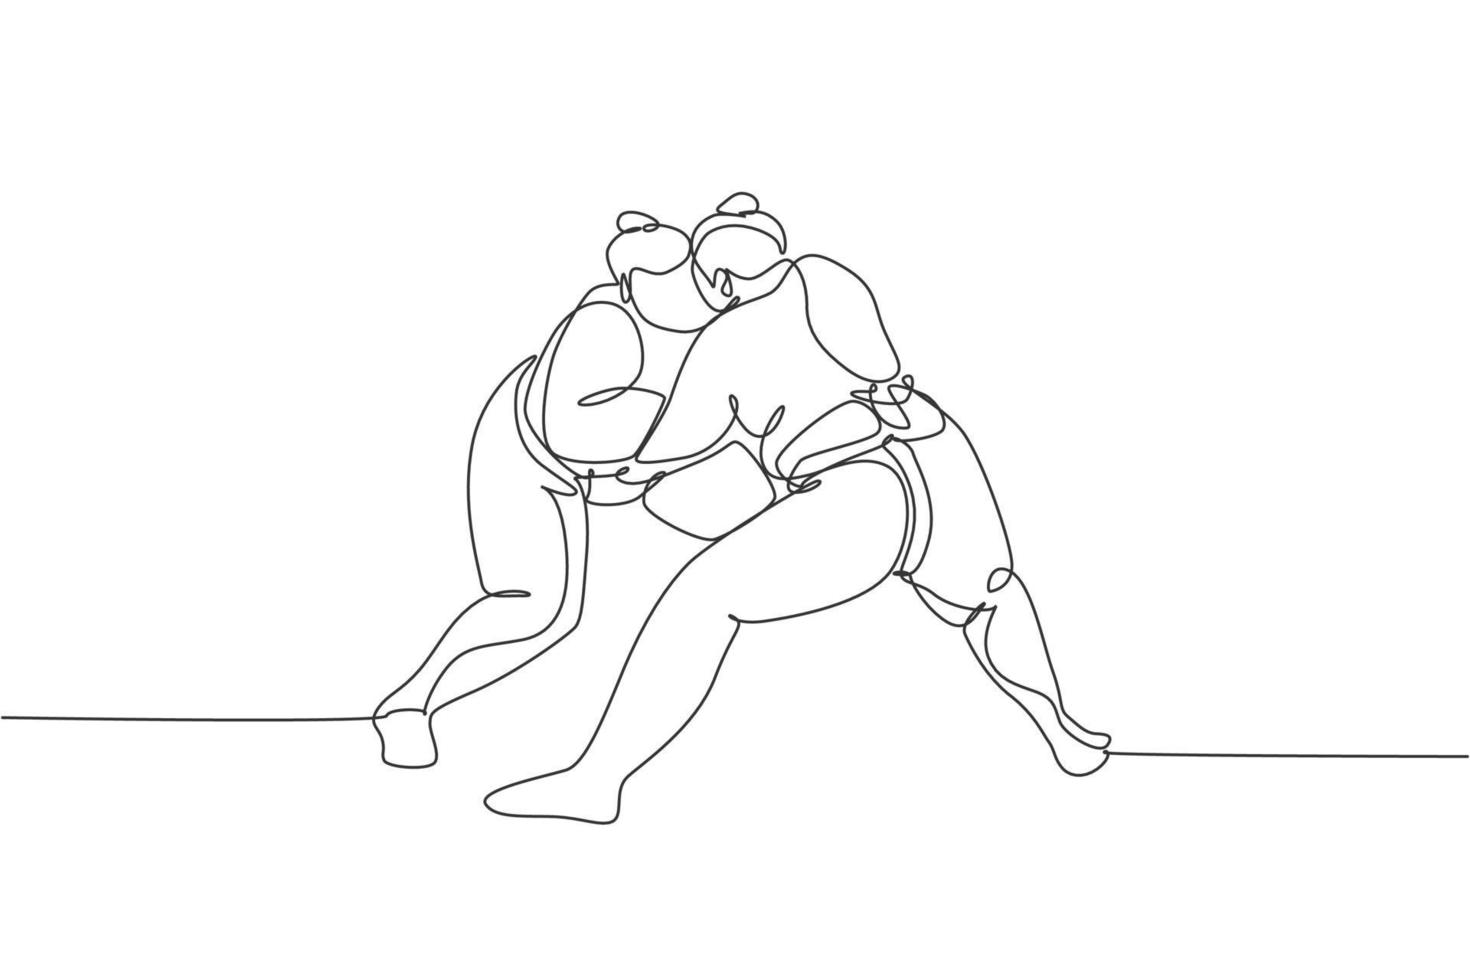 un dessin au trait unique de deux jeunes hommes sumo japonais en surpoids combattant à l'illustration vectorielle de compétition d'arène. concept de sport de combat traditionnel rikishi. conception de dessin de ligne continue moderne vecteur